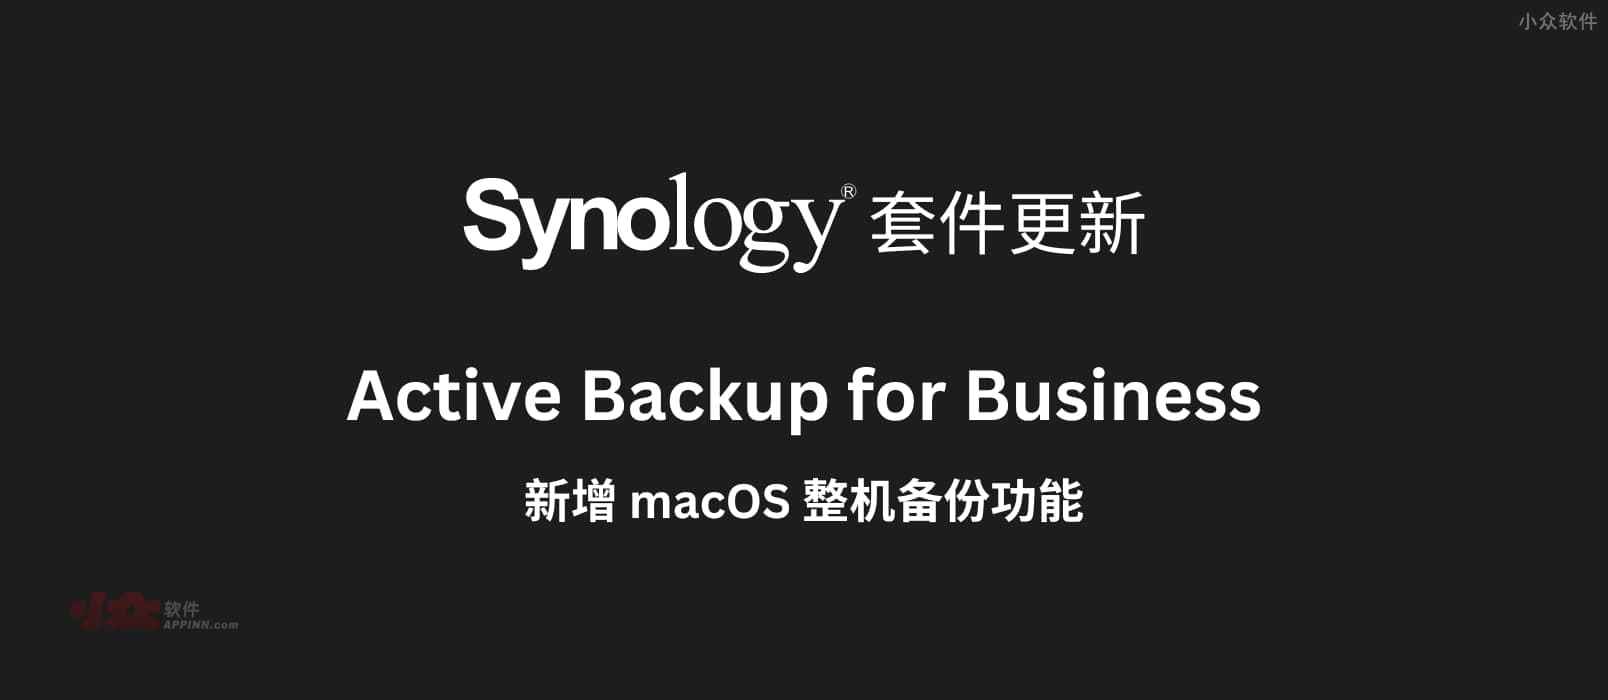 群晖 Active Backup for Business 套件新增 macOS 整机备份功能，目前已支持个人电脑、物理服务器、文件服务器、虚拟机备份